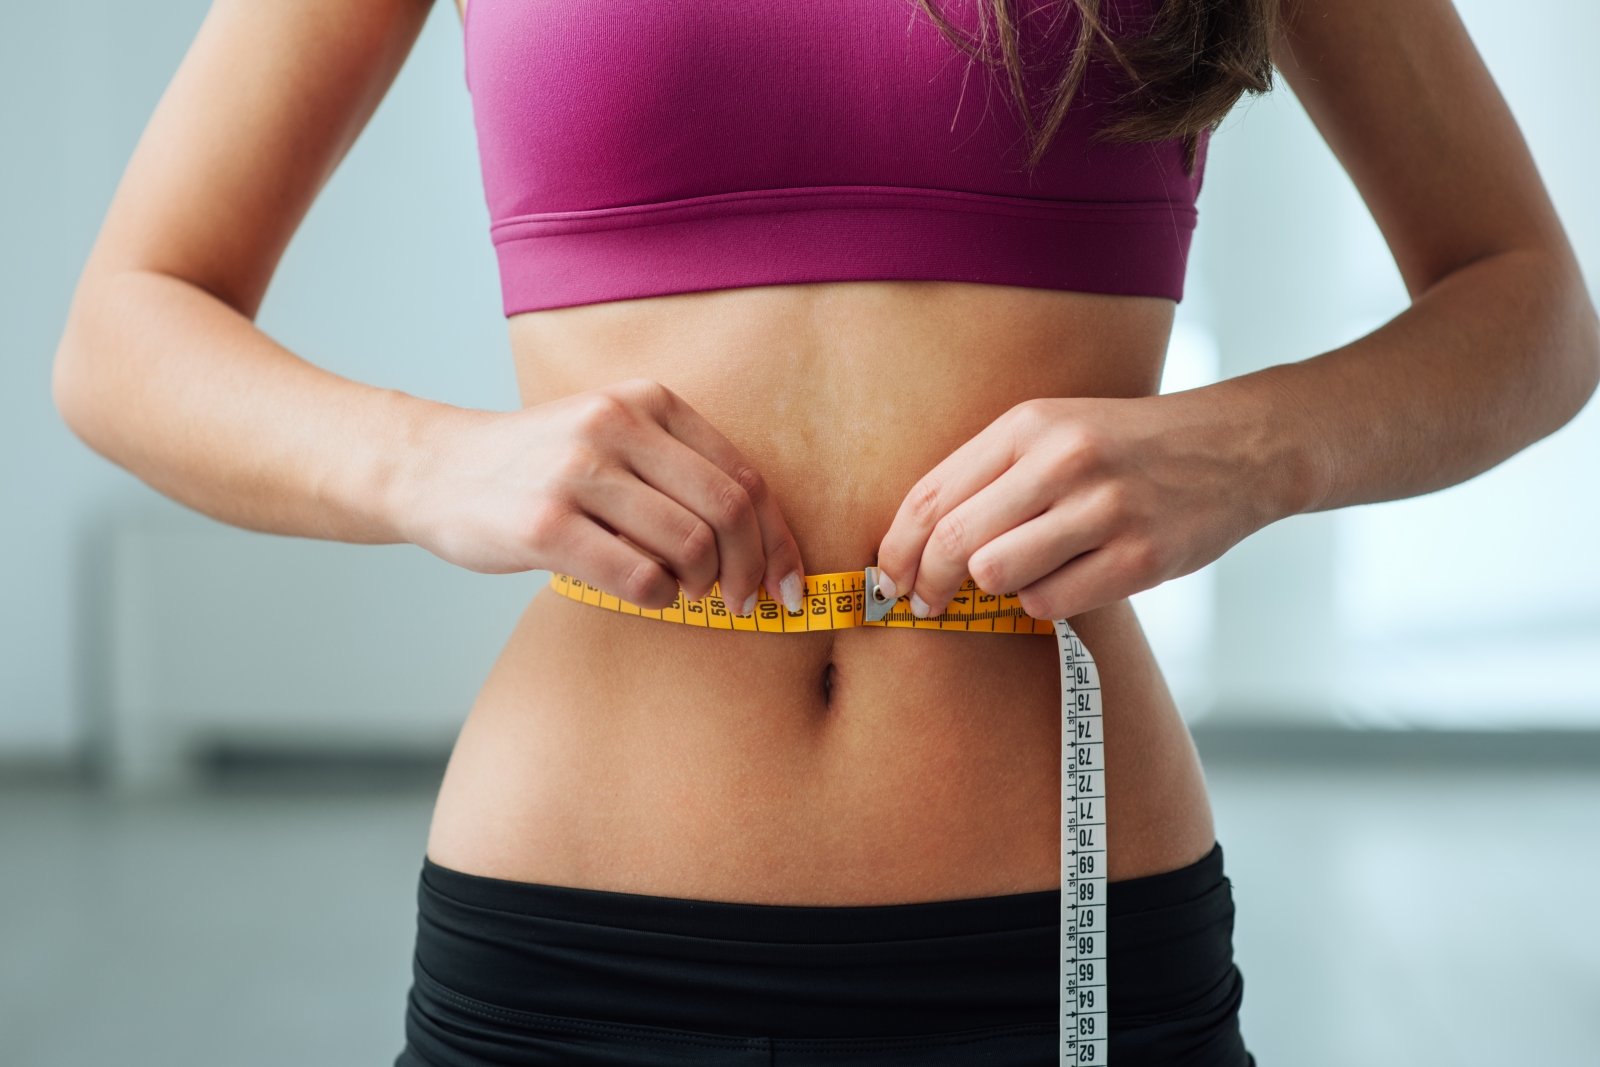 kaip numesti svorį bet išlikti sveikam svorio metimo ekspertė lisa lynn